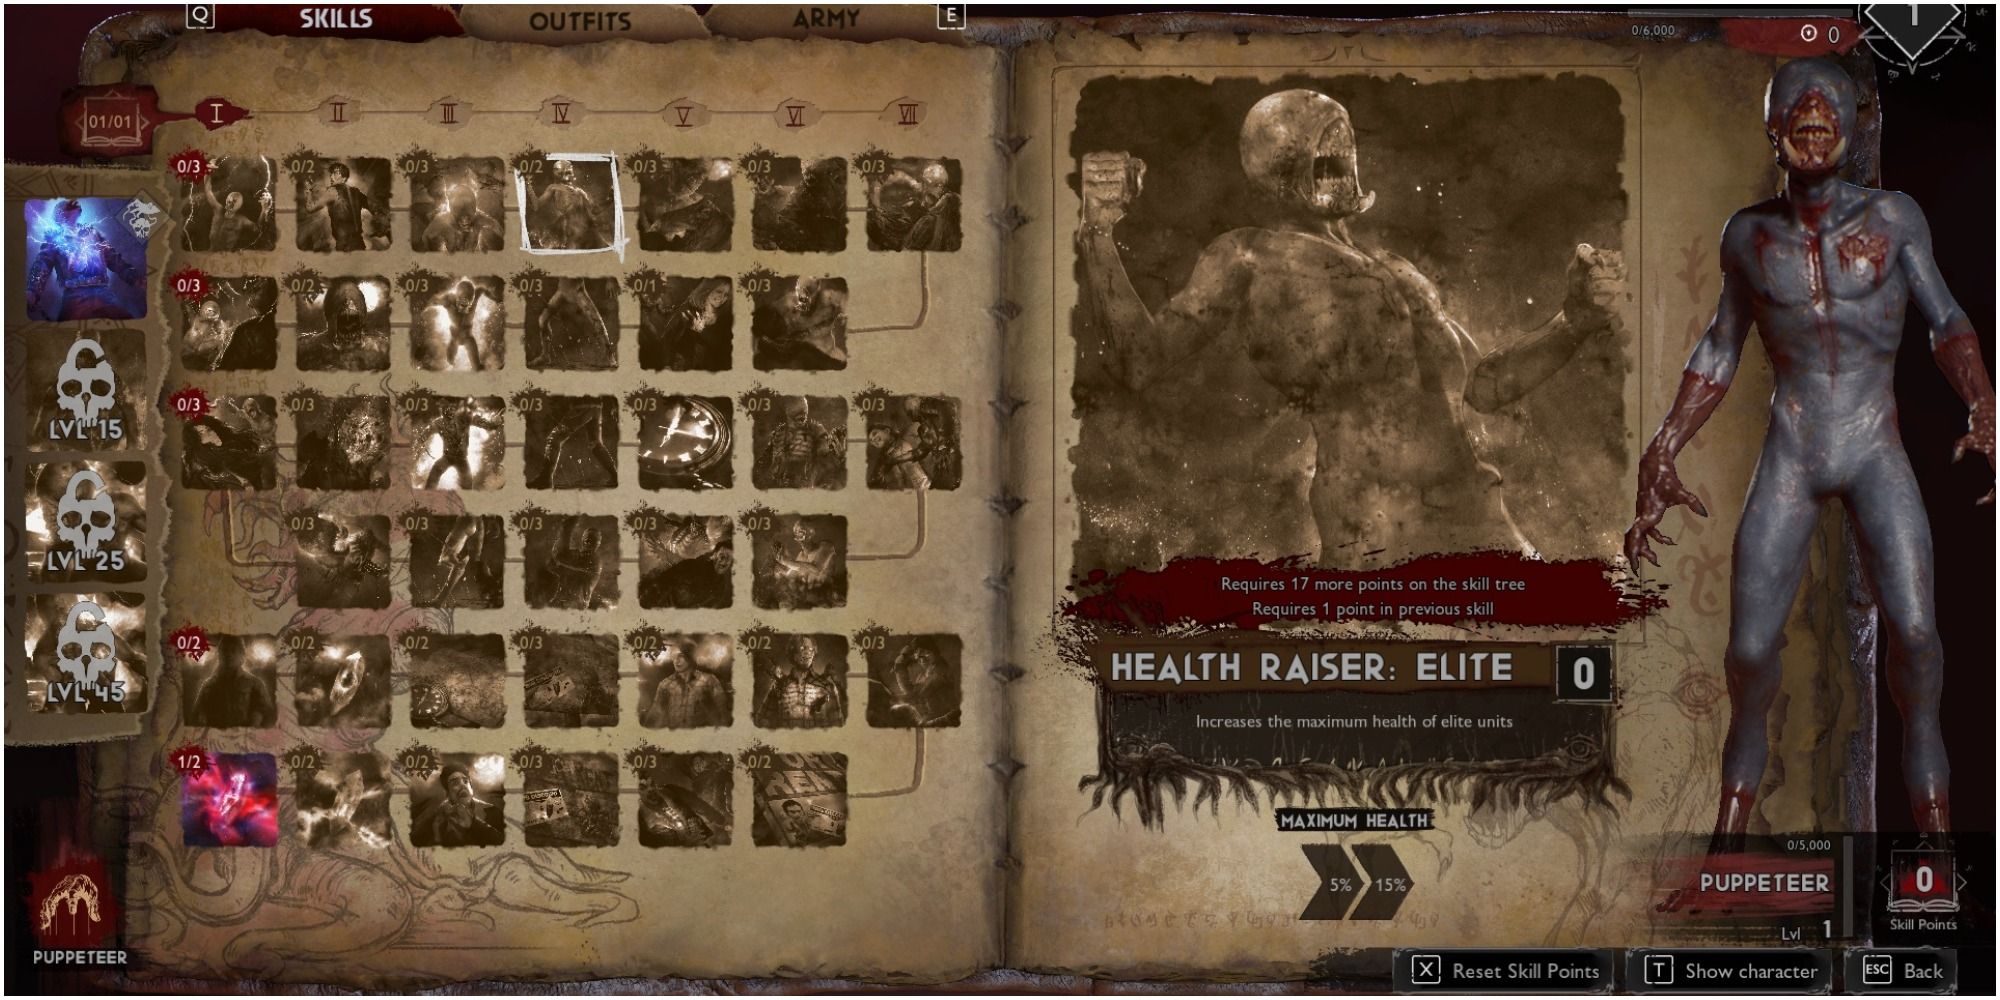 Evil Dead The Game Puppeteer Skill Health Raiser Elite Description